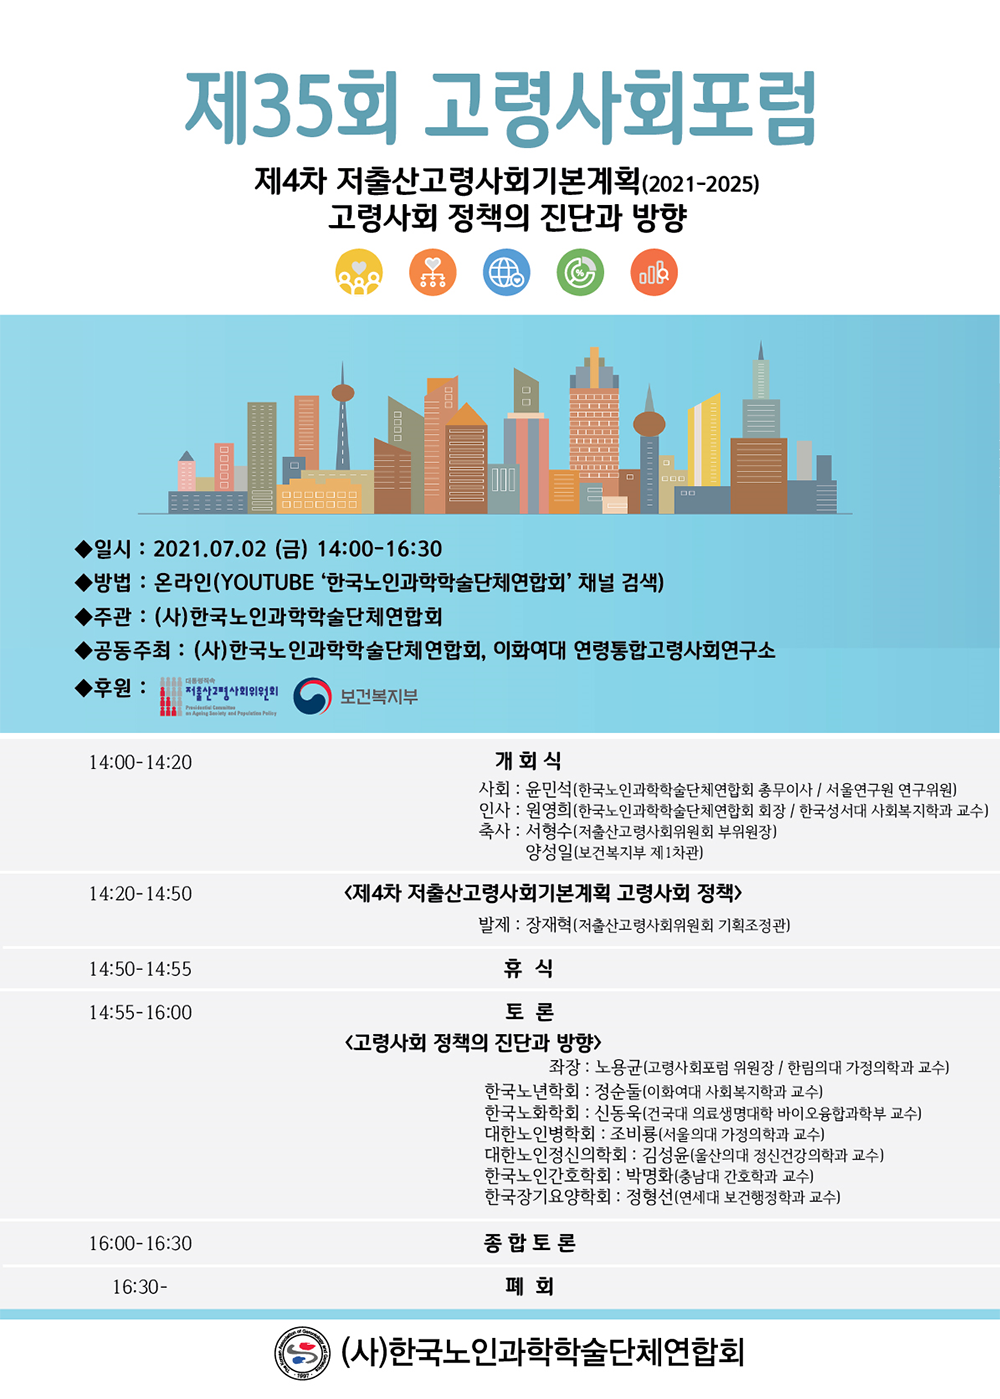 한국노인과학학술단체연합회, 「제35회 고령사회포럼」 개최